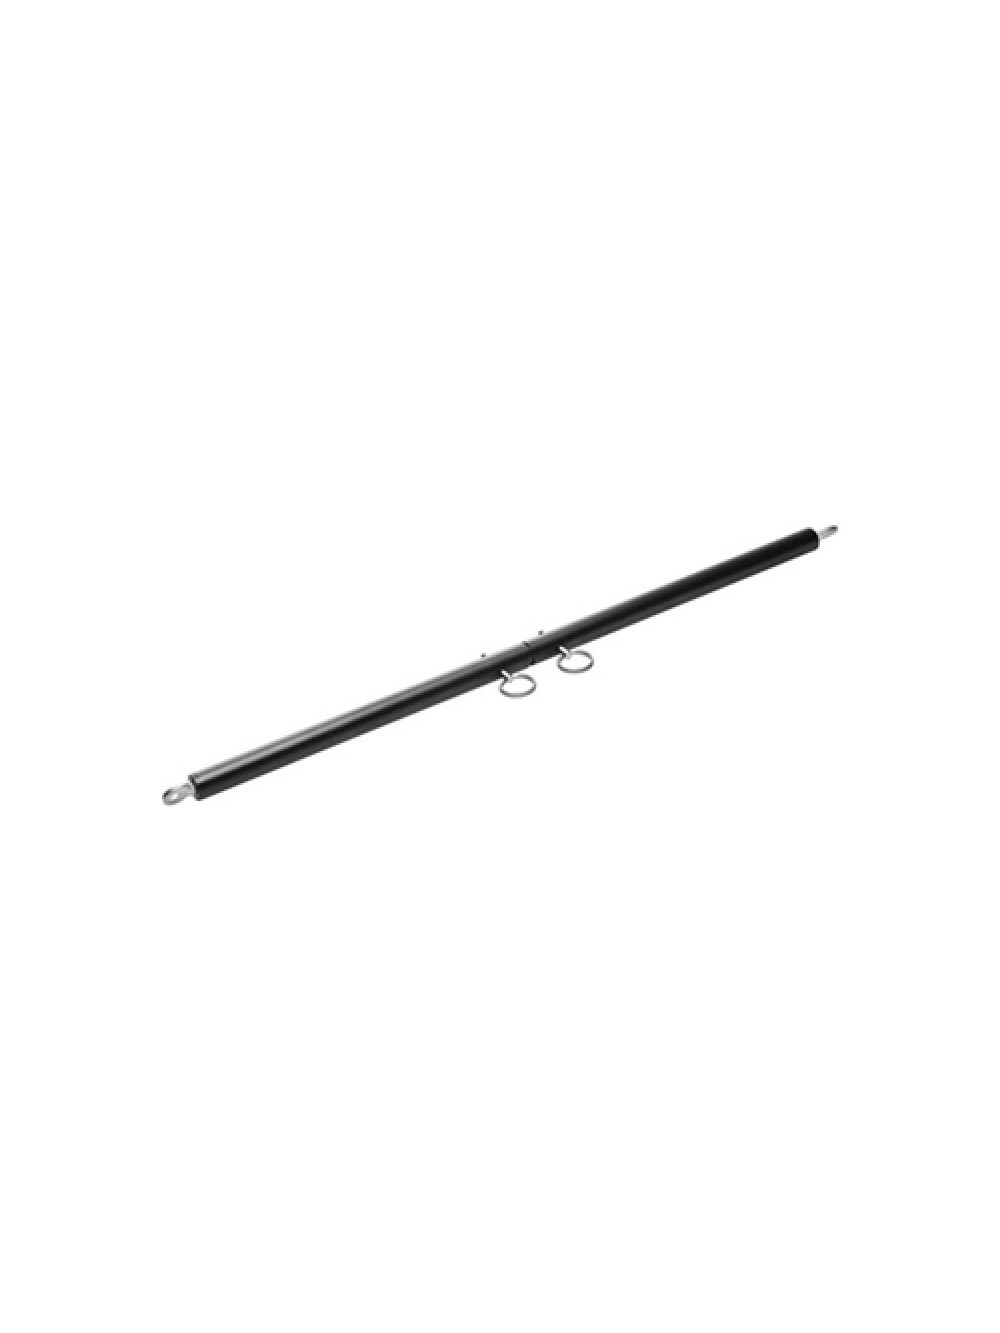 Black Steel Adjustable Spreader Bar 848518013217